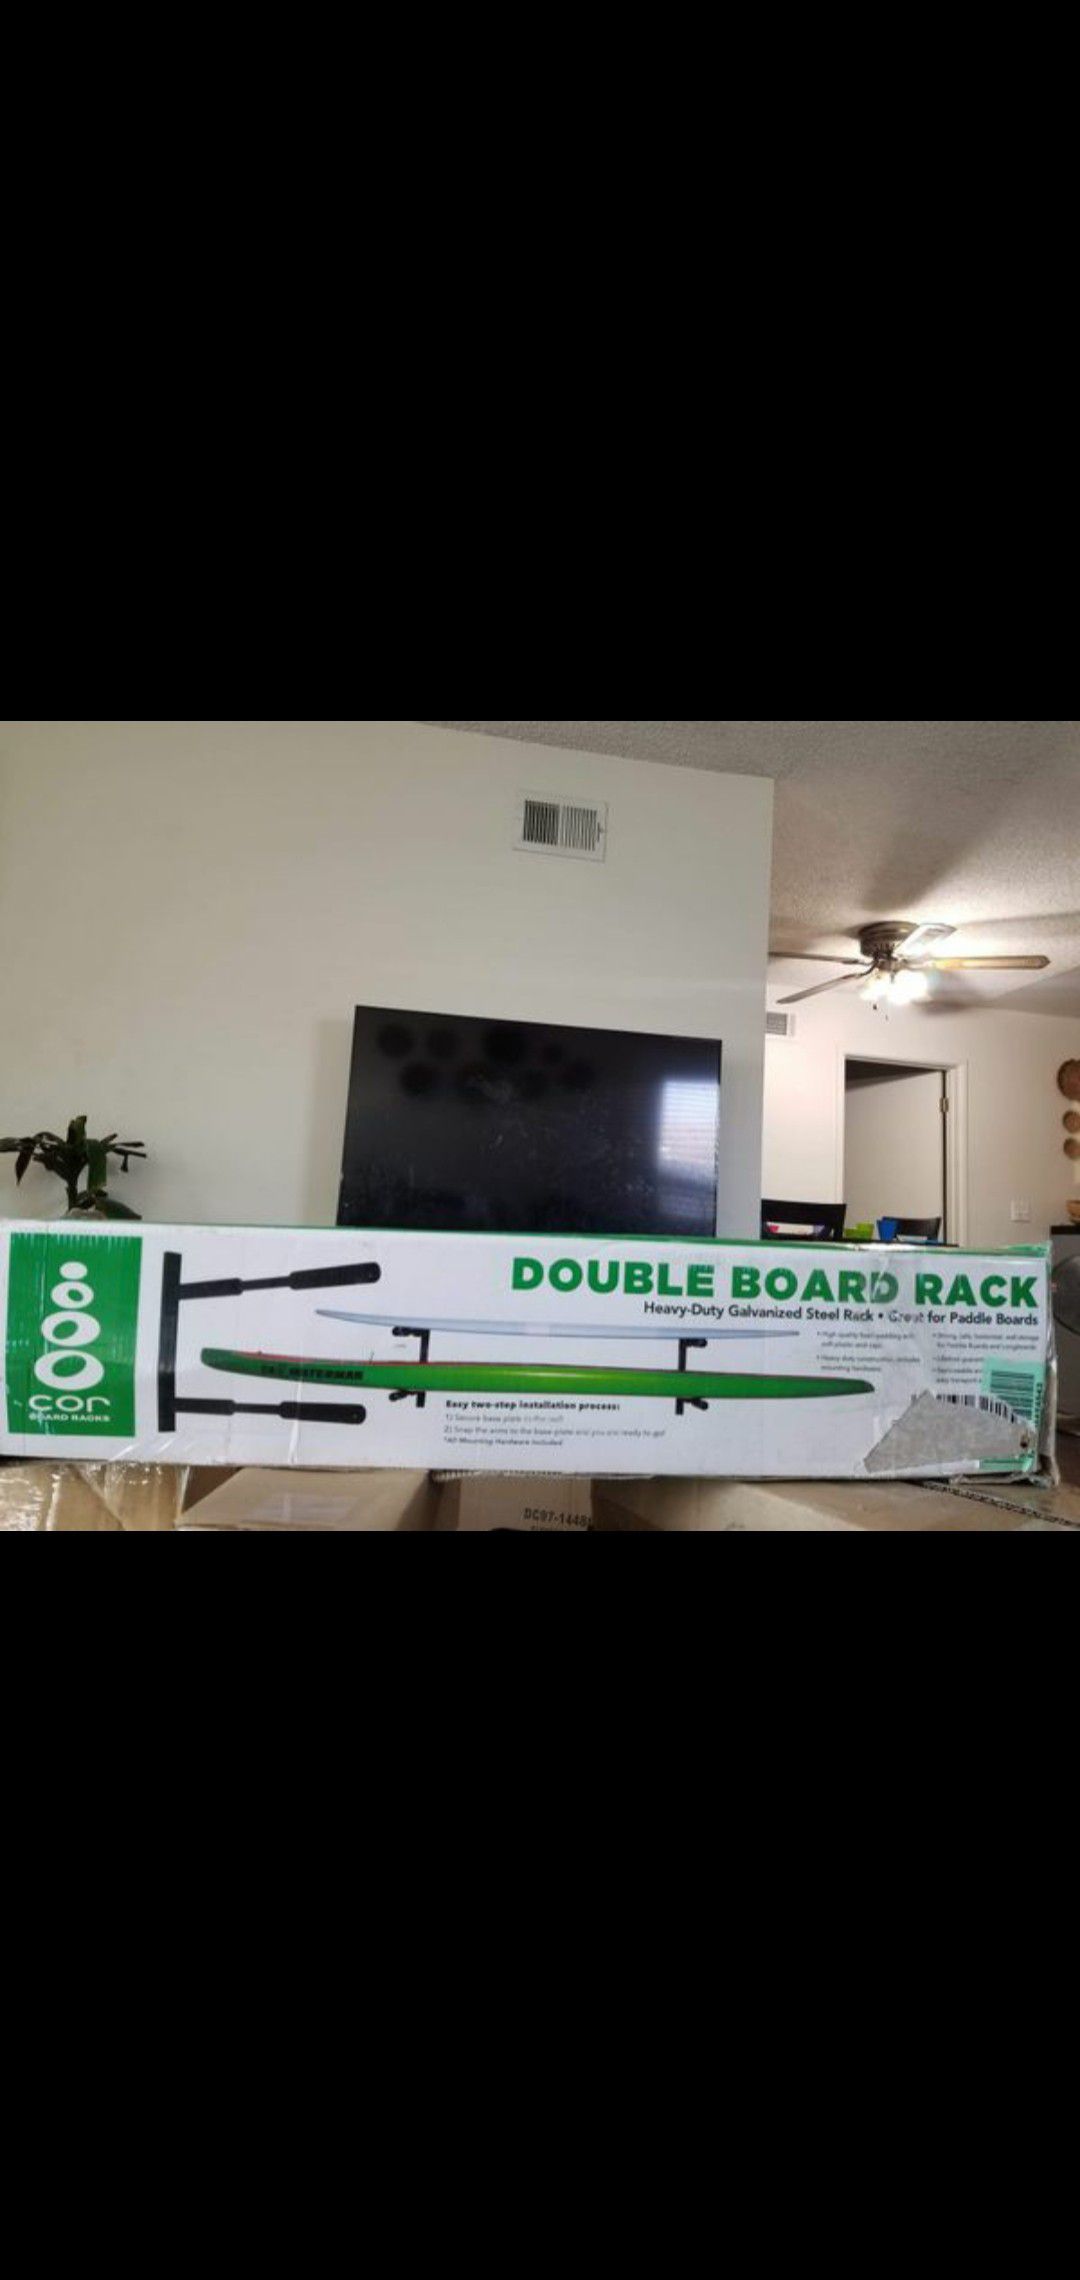 Double board rack